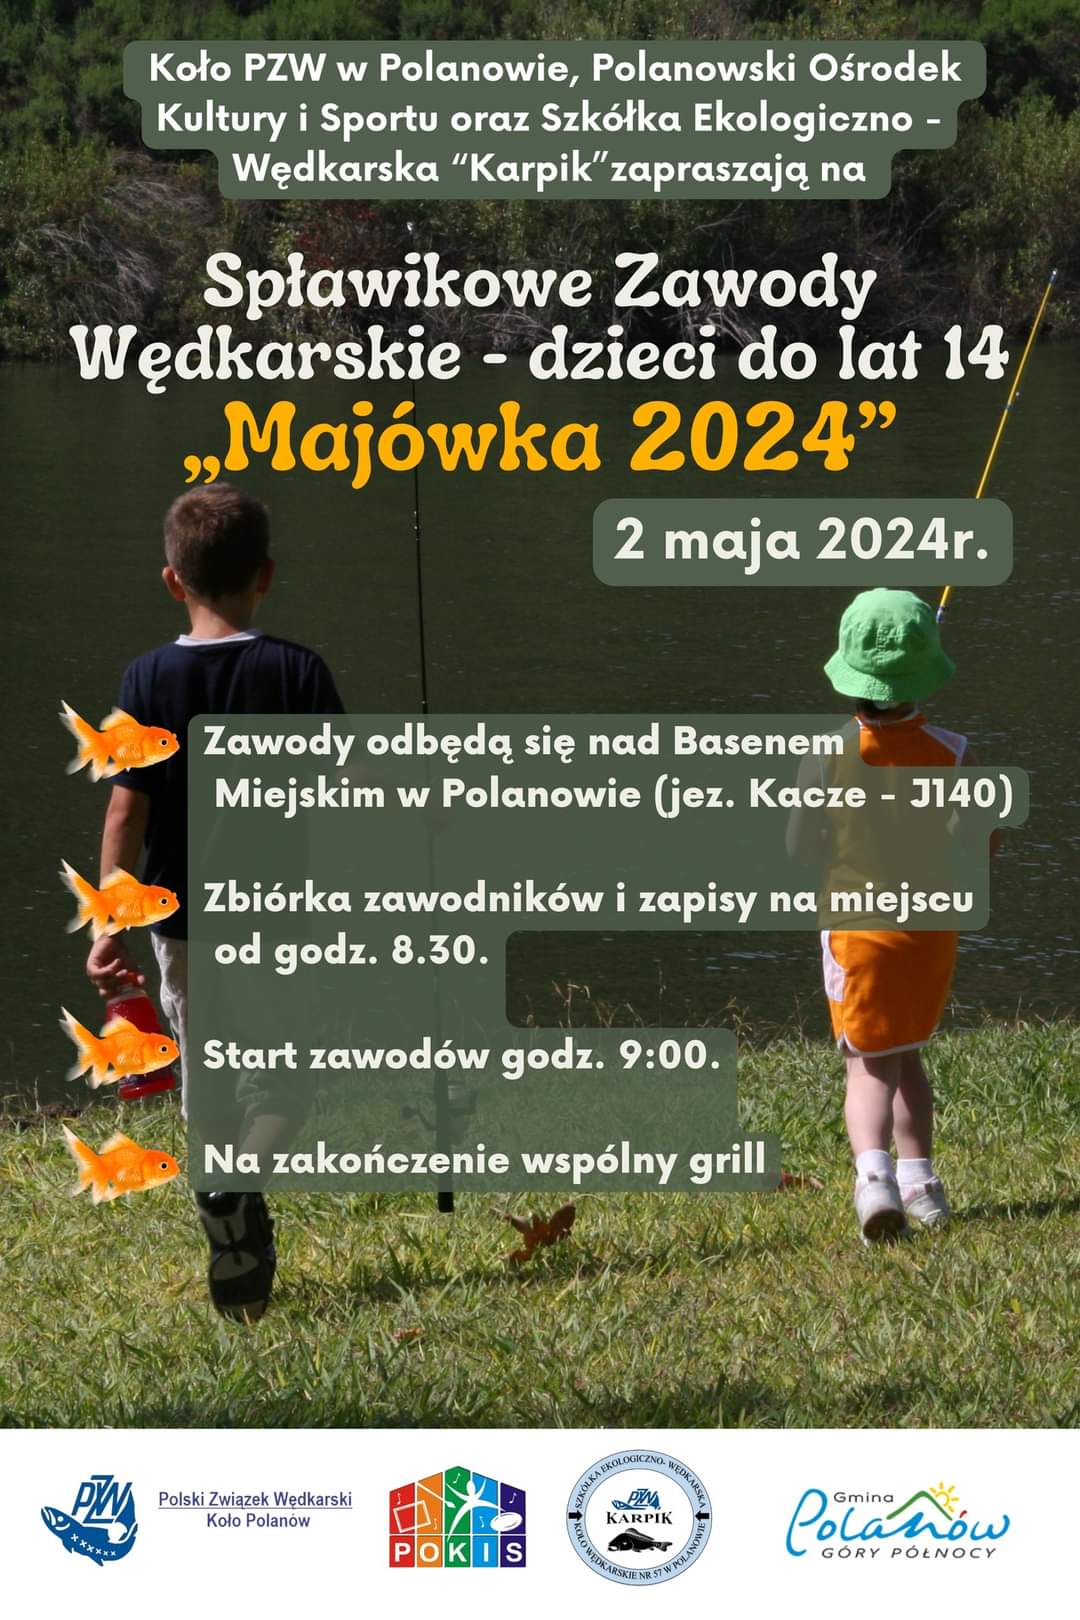 Plakat z zaproszeniem na spławikowe zawody wędkarskie w Polanowie 2 maja 2024